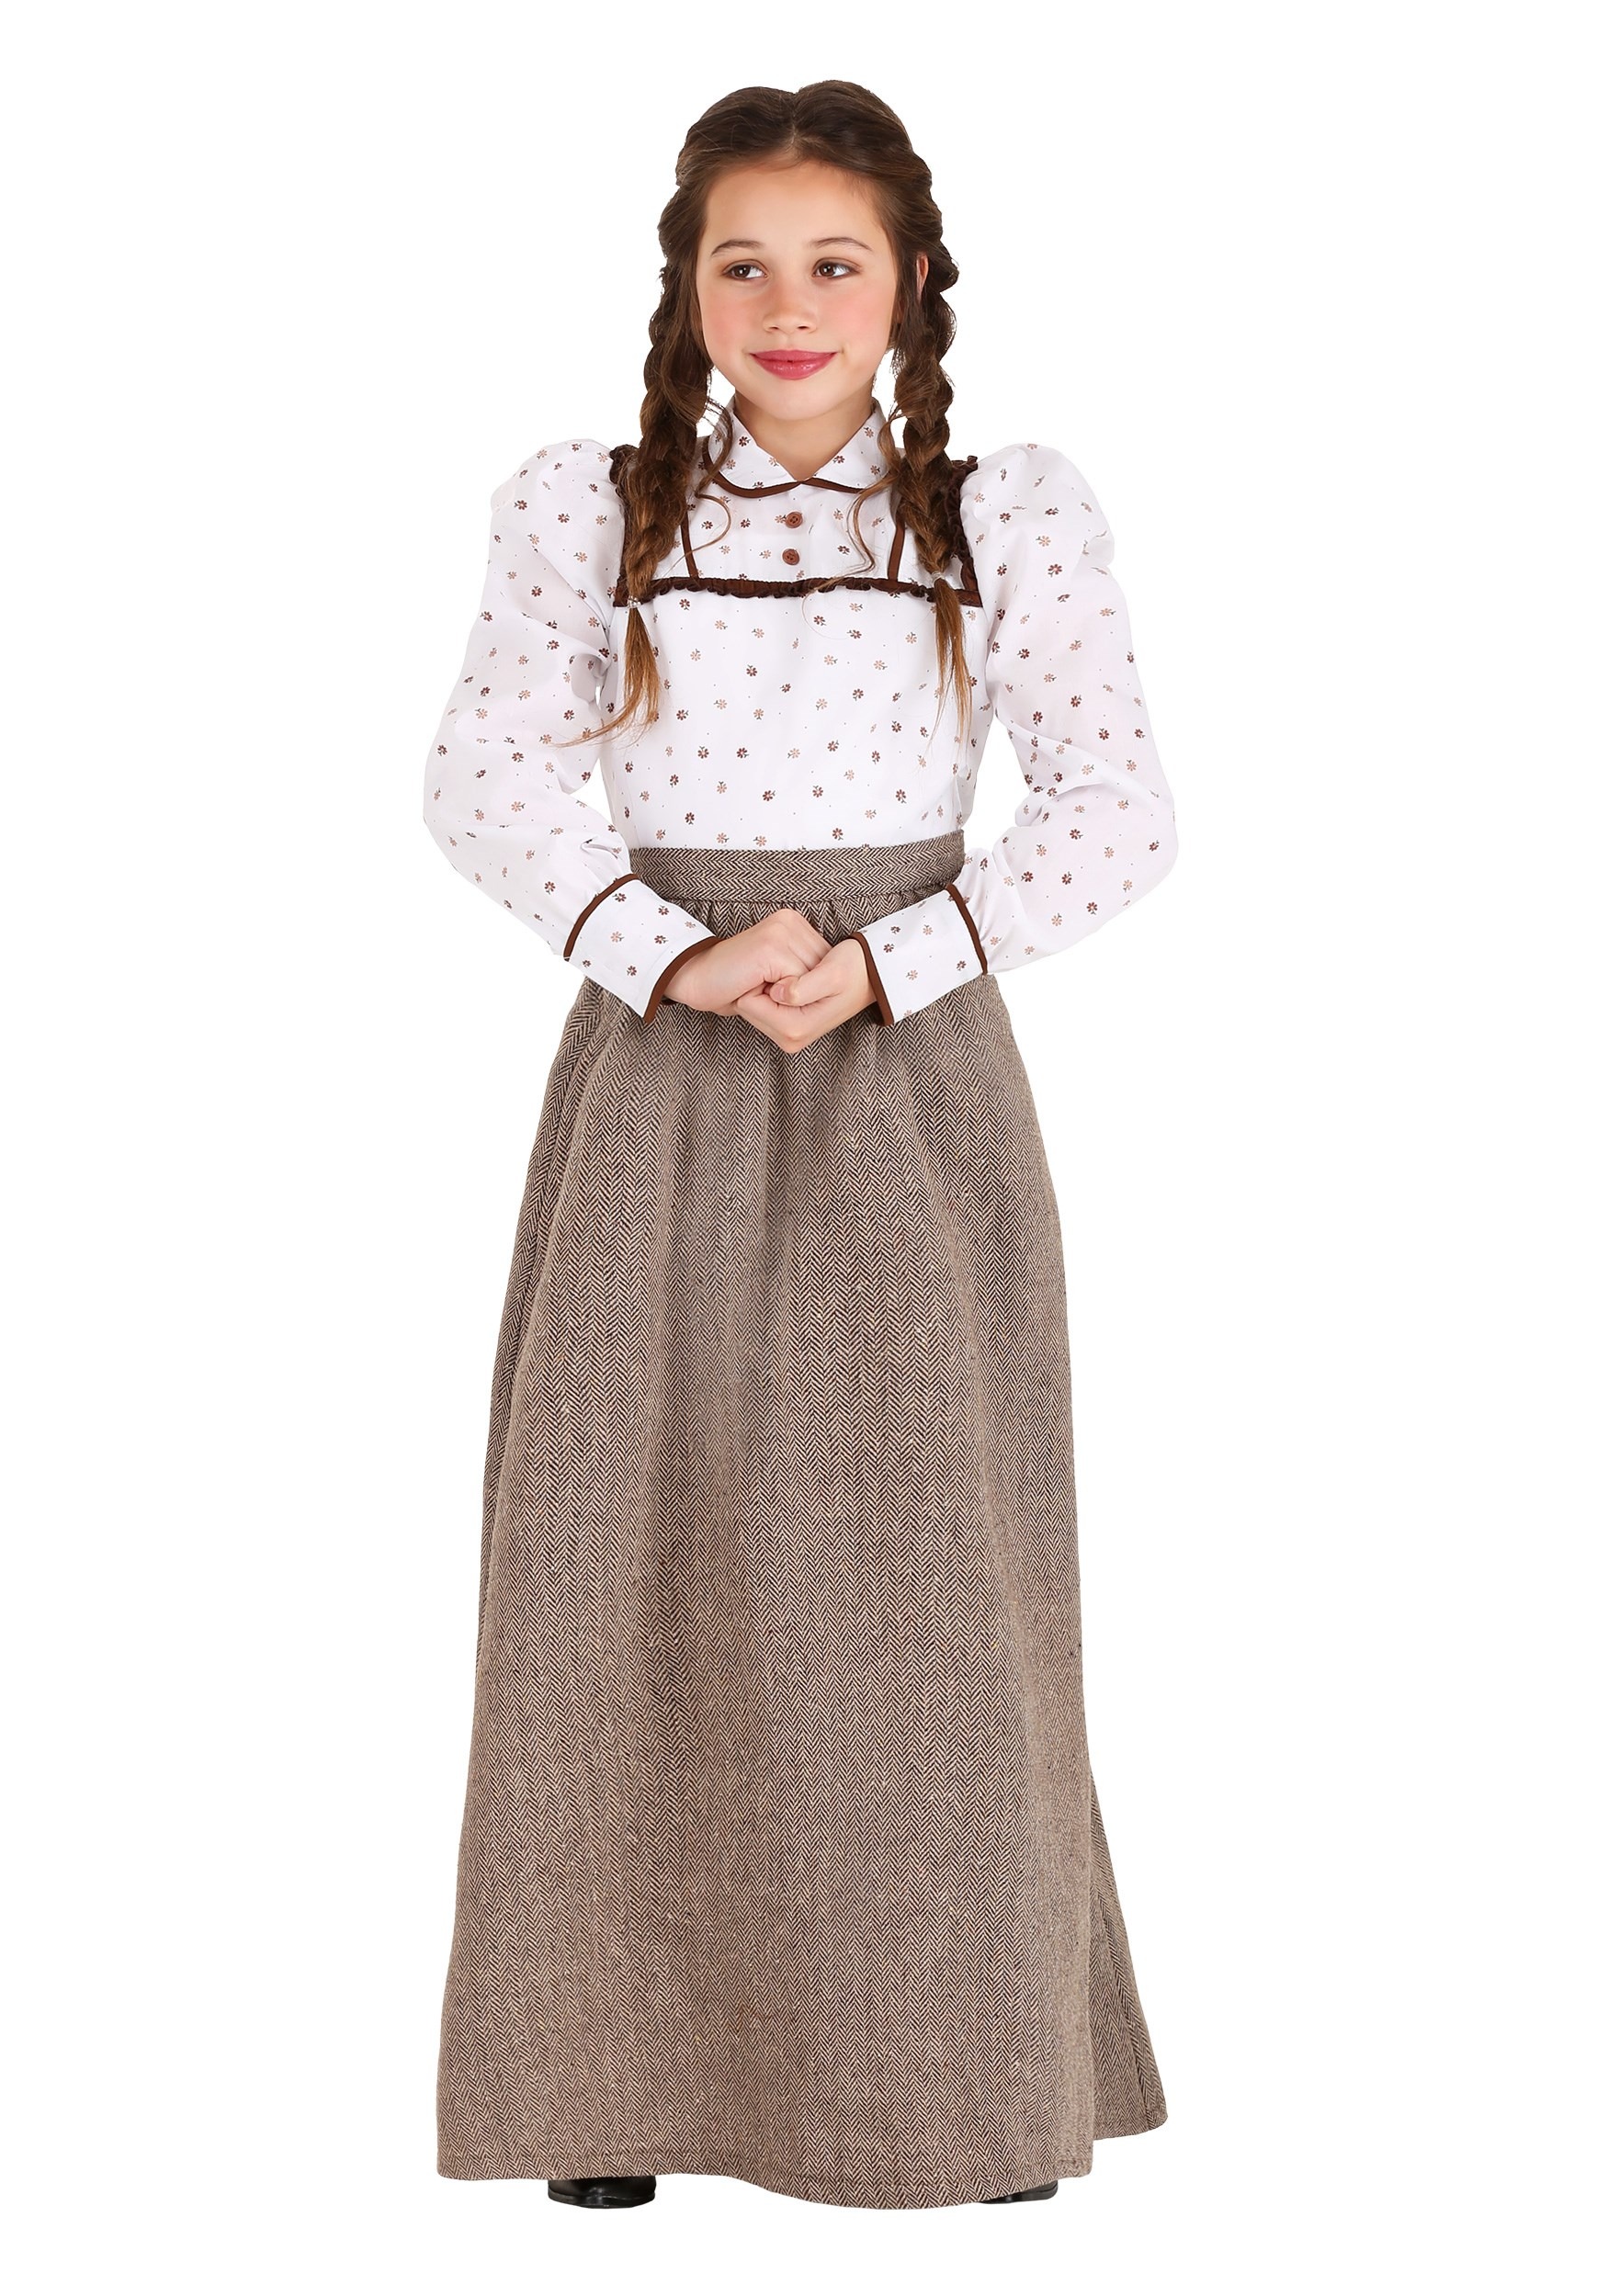 Westward Pioneer Girl's Costume